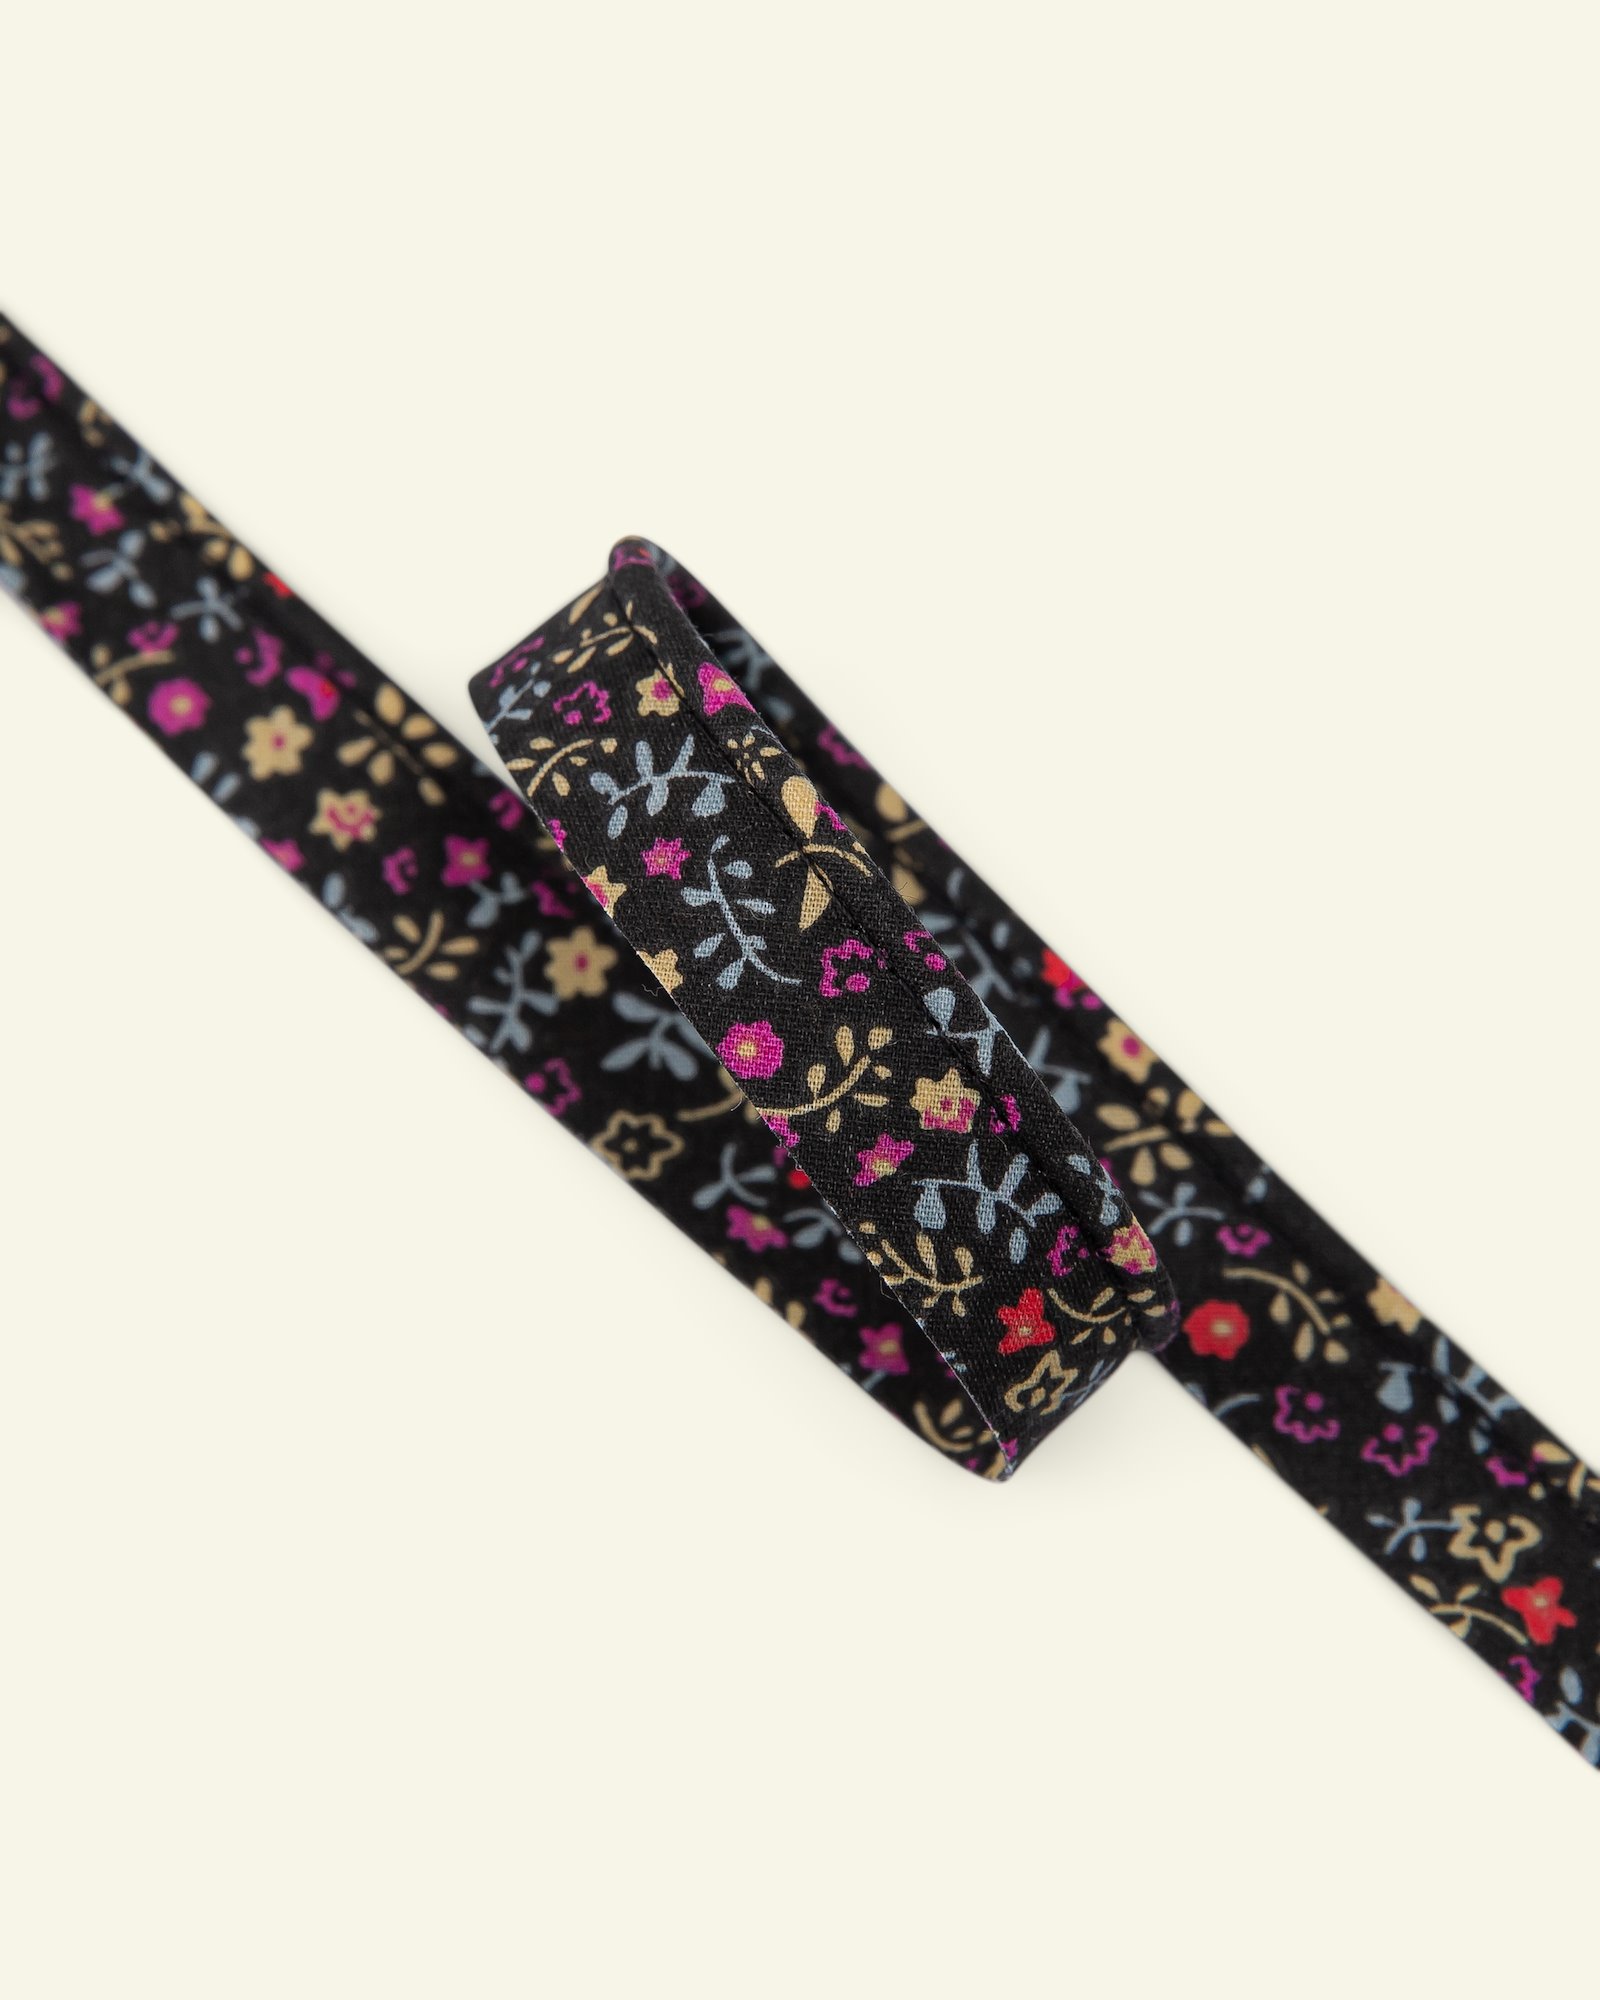 Biesenband Blumen 4mm Schw./Gelb/Pink,3m 22329_pack